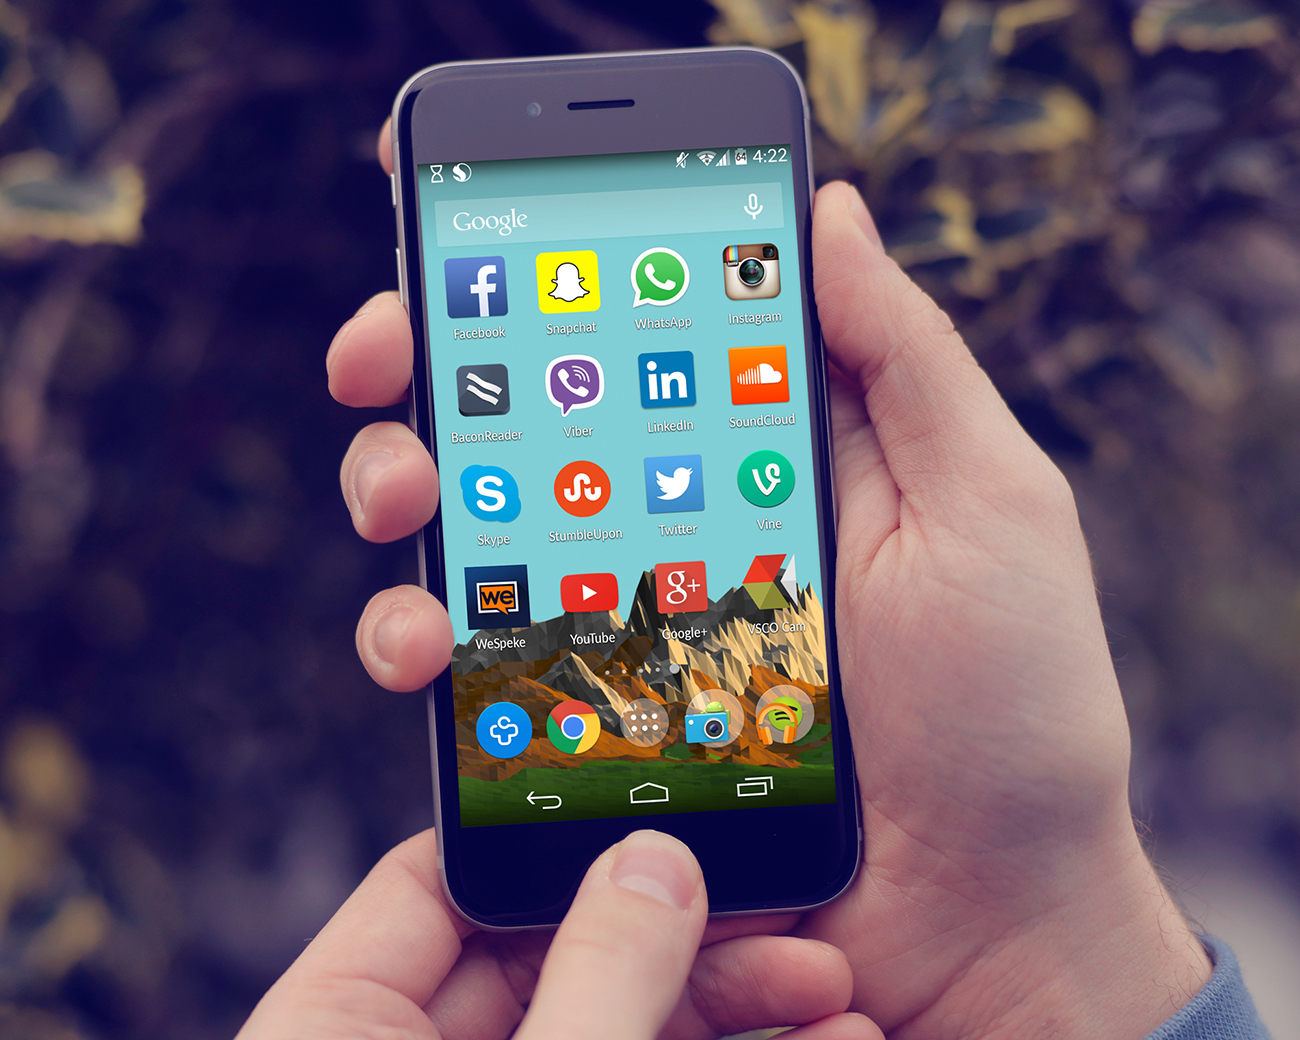 Uma fotografia mostra a tela de um celular, com muitos aplicativos, incluindo Facebook, Skype, Twitter, LinkedIn e Instagram.